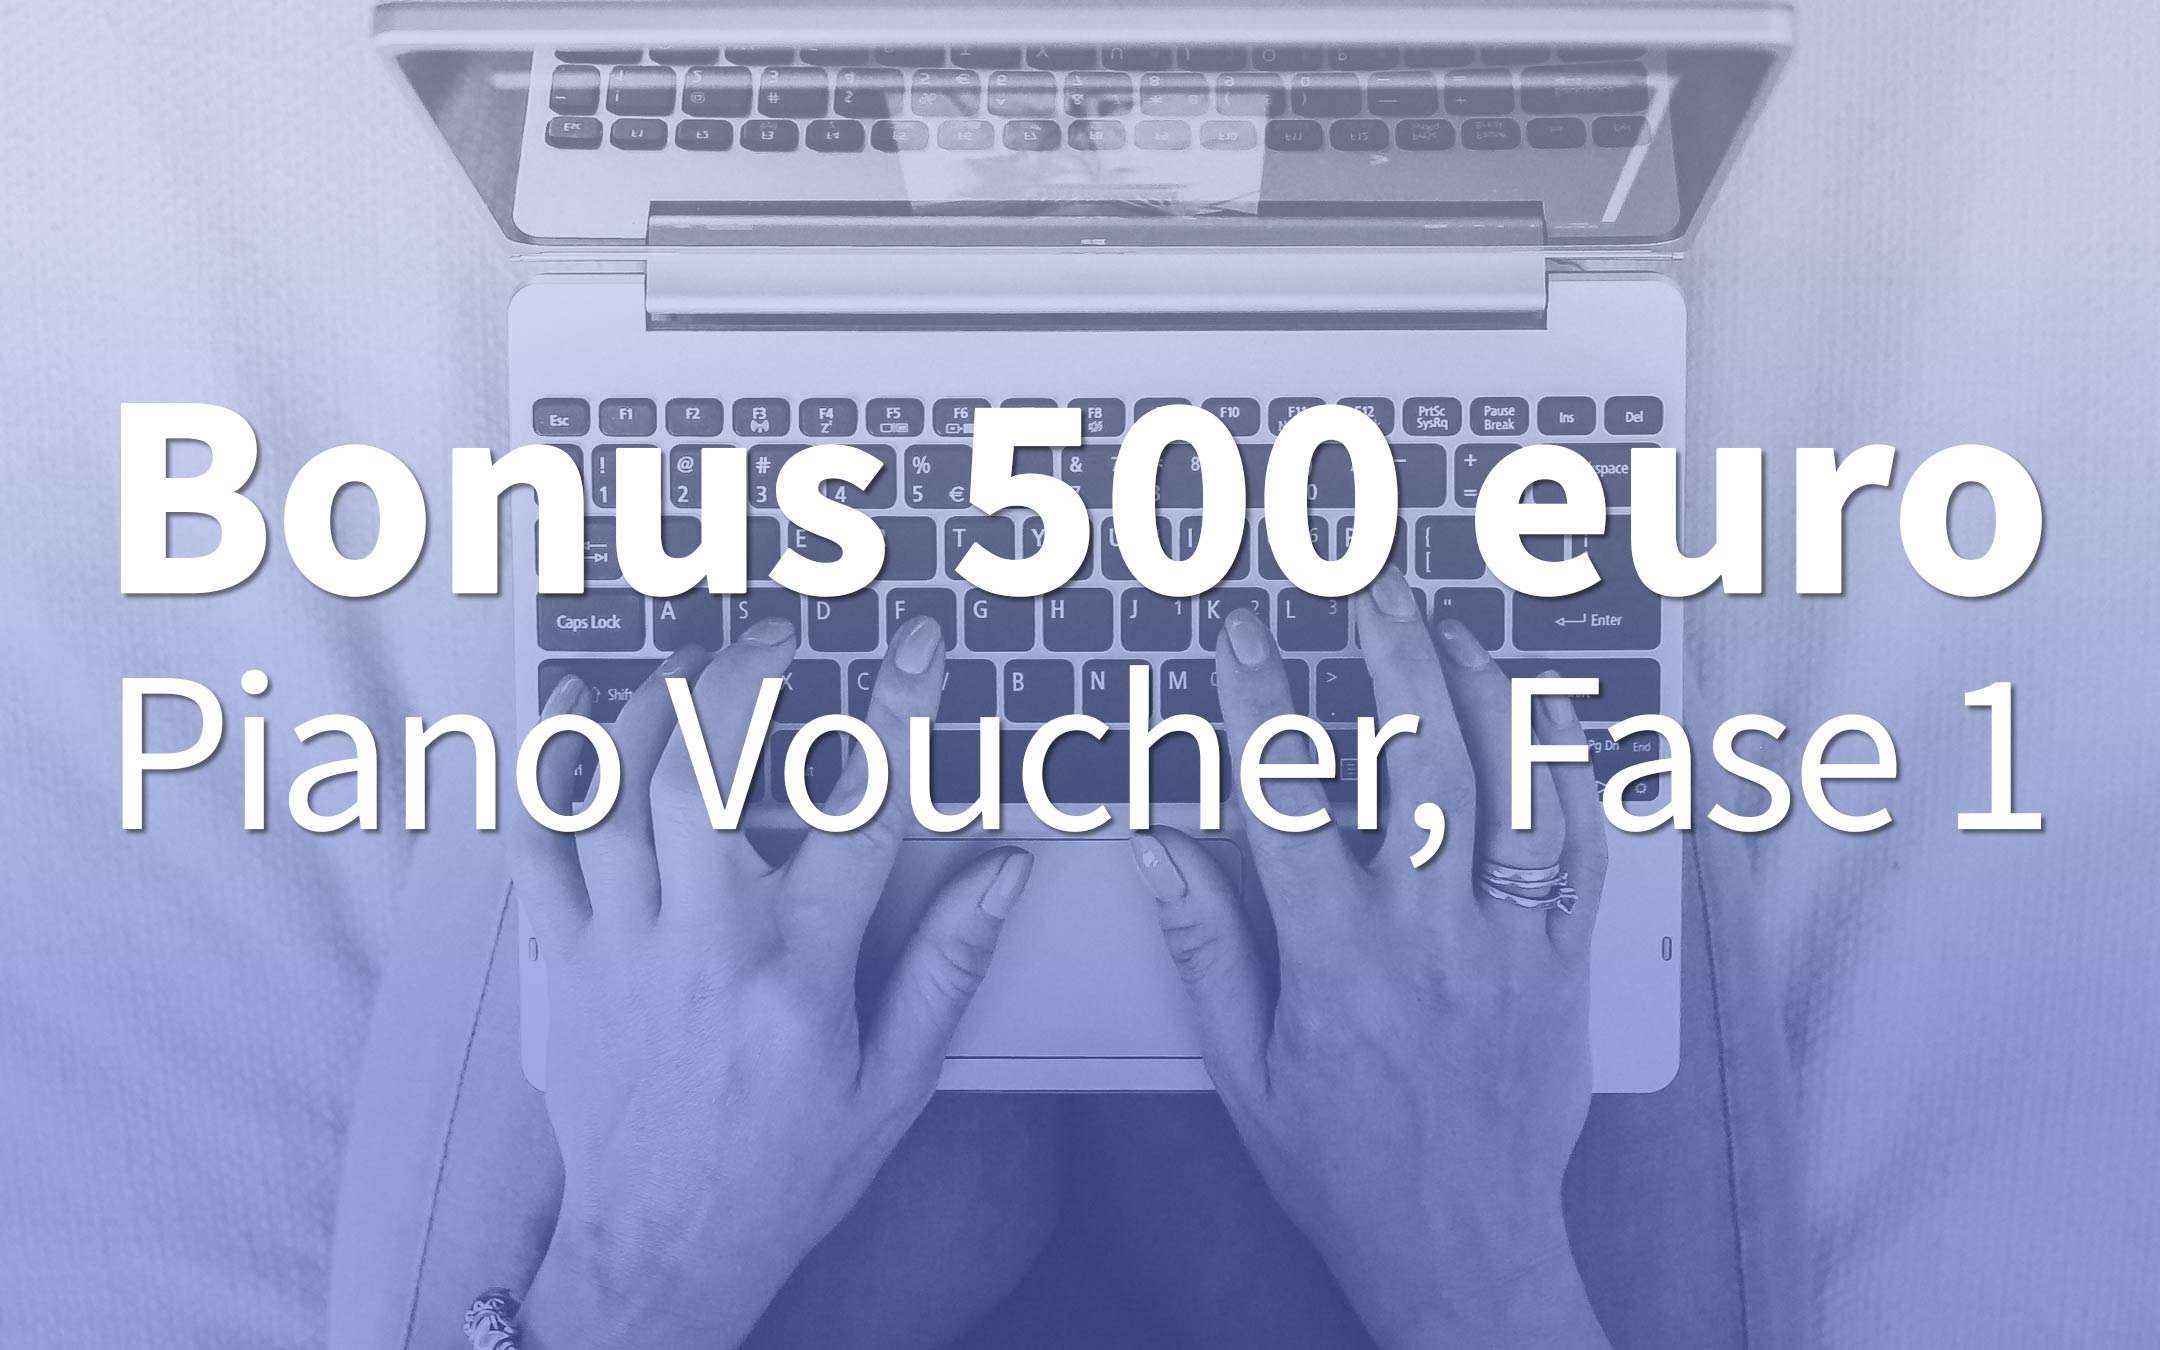 Bonus 500 euros: one month of Voucher Plan